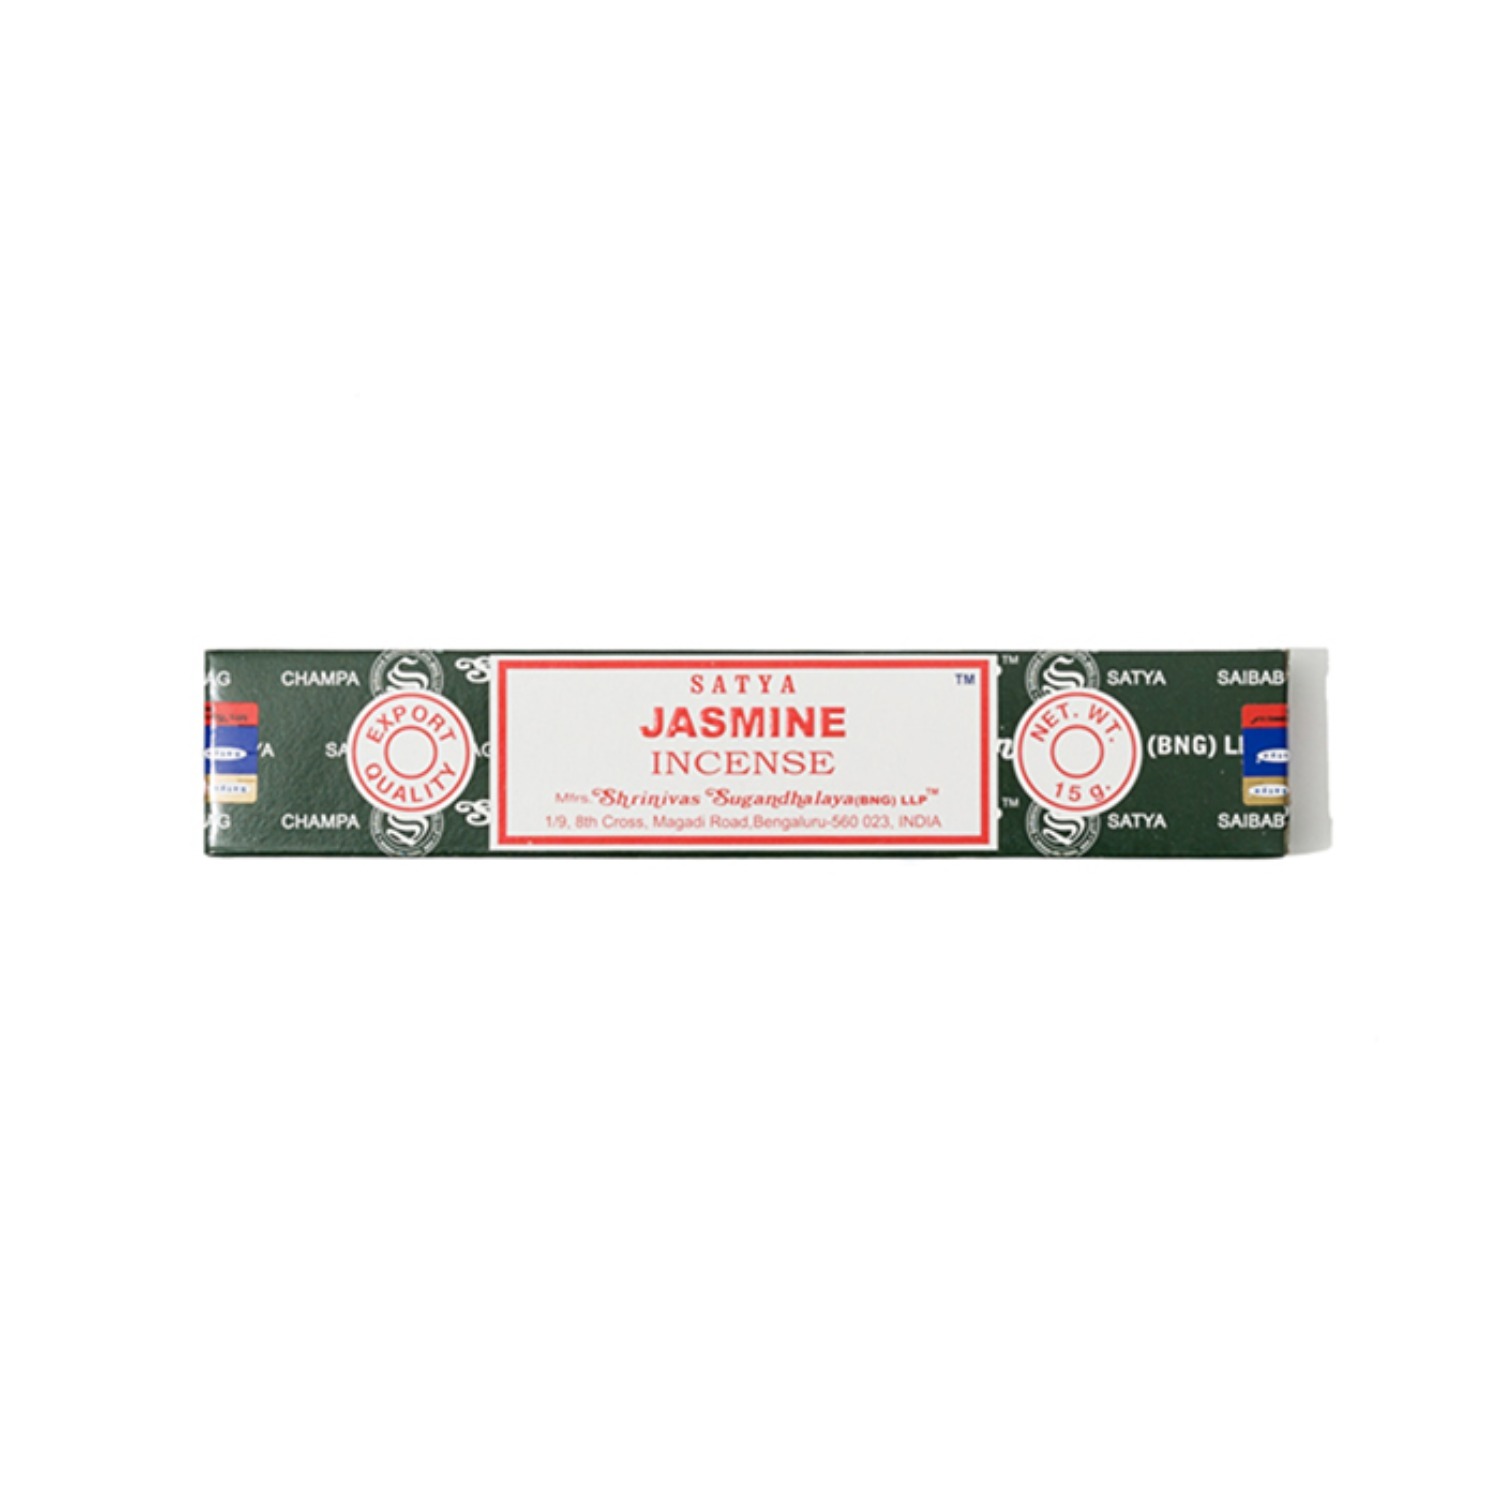 satya jasmine incense stick